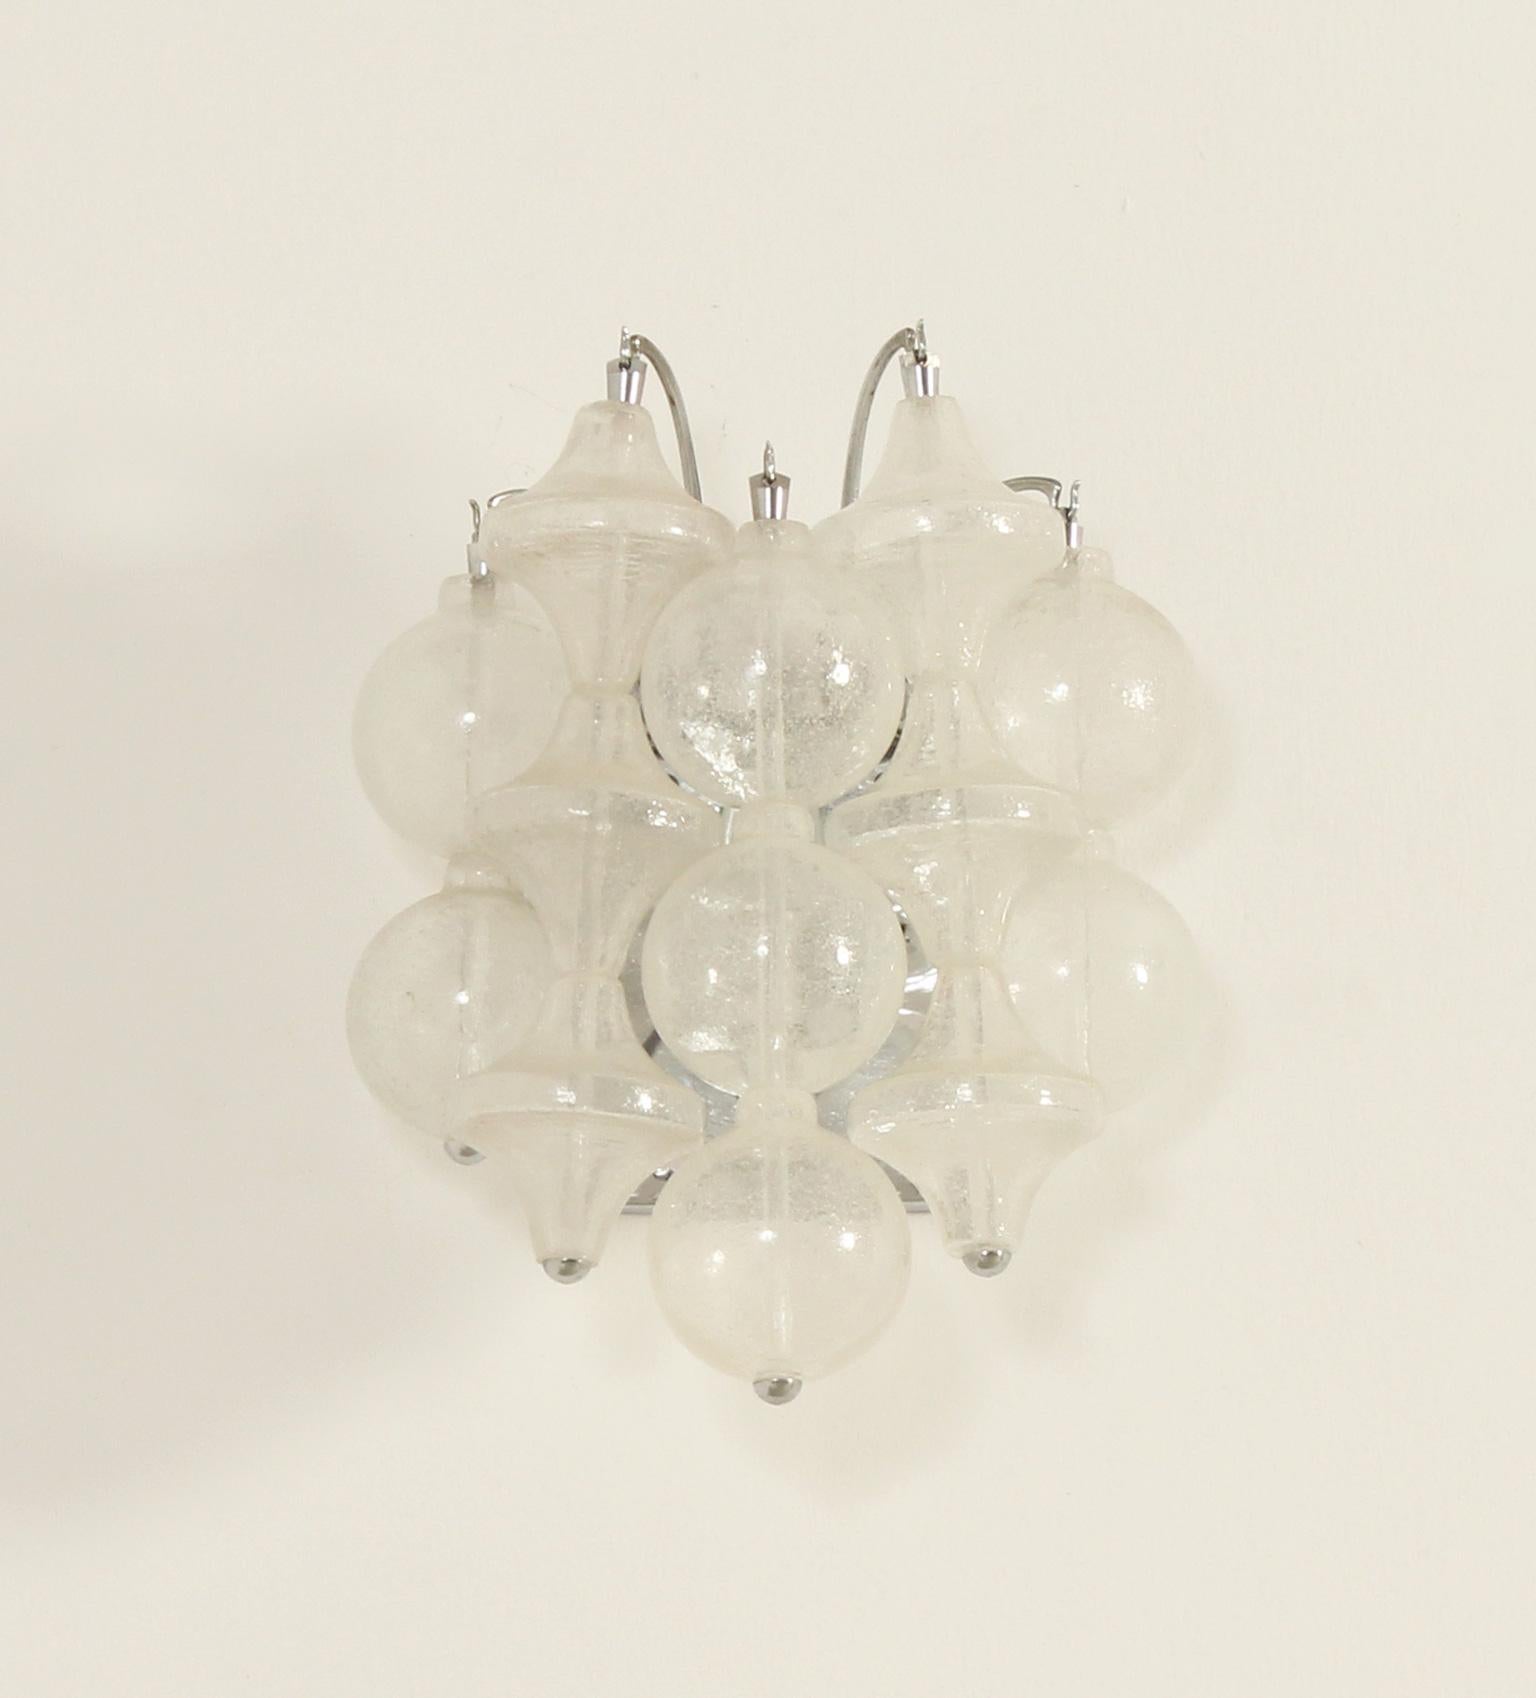 Tulpenglas-Leuchter von J. T. Kalmar, Österreich, 1960er Jahre. Stücke aus mundgeblasenem Glas mit verschiedenen Formen, eine E14-Glühbirne. 